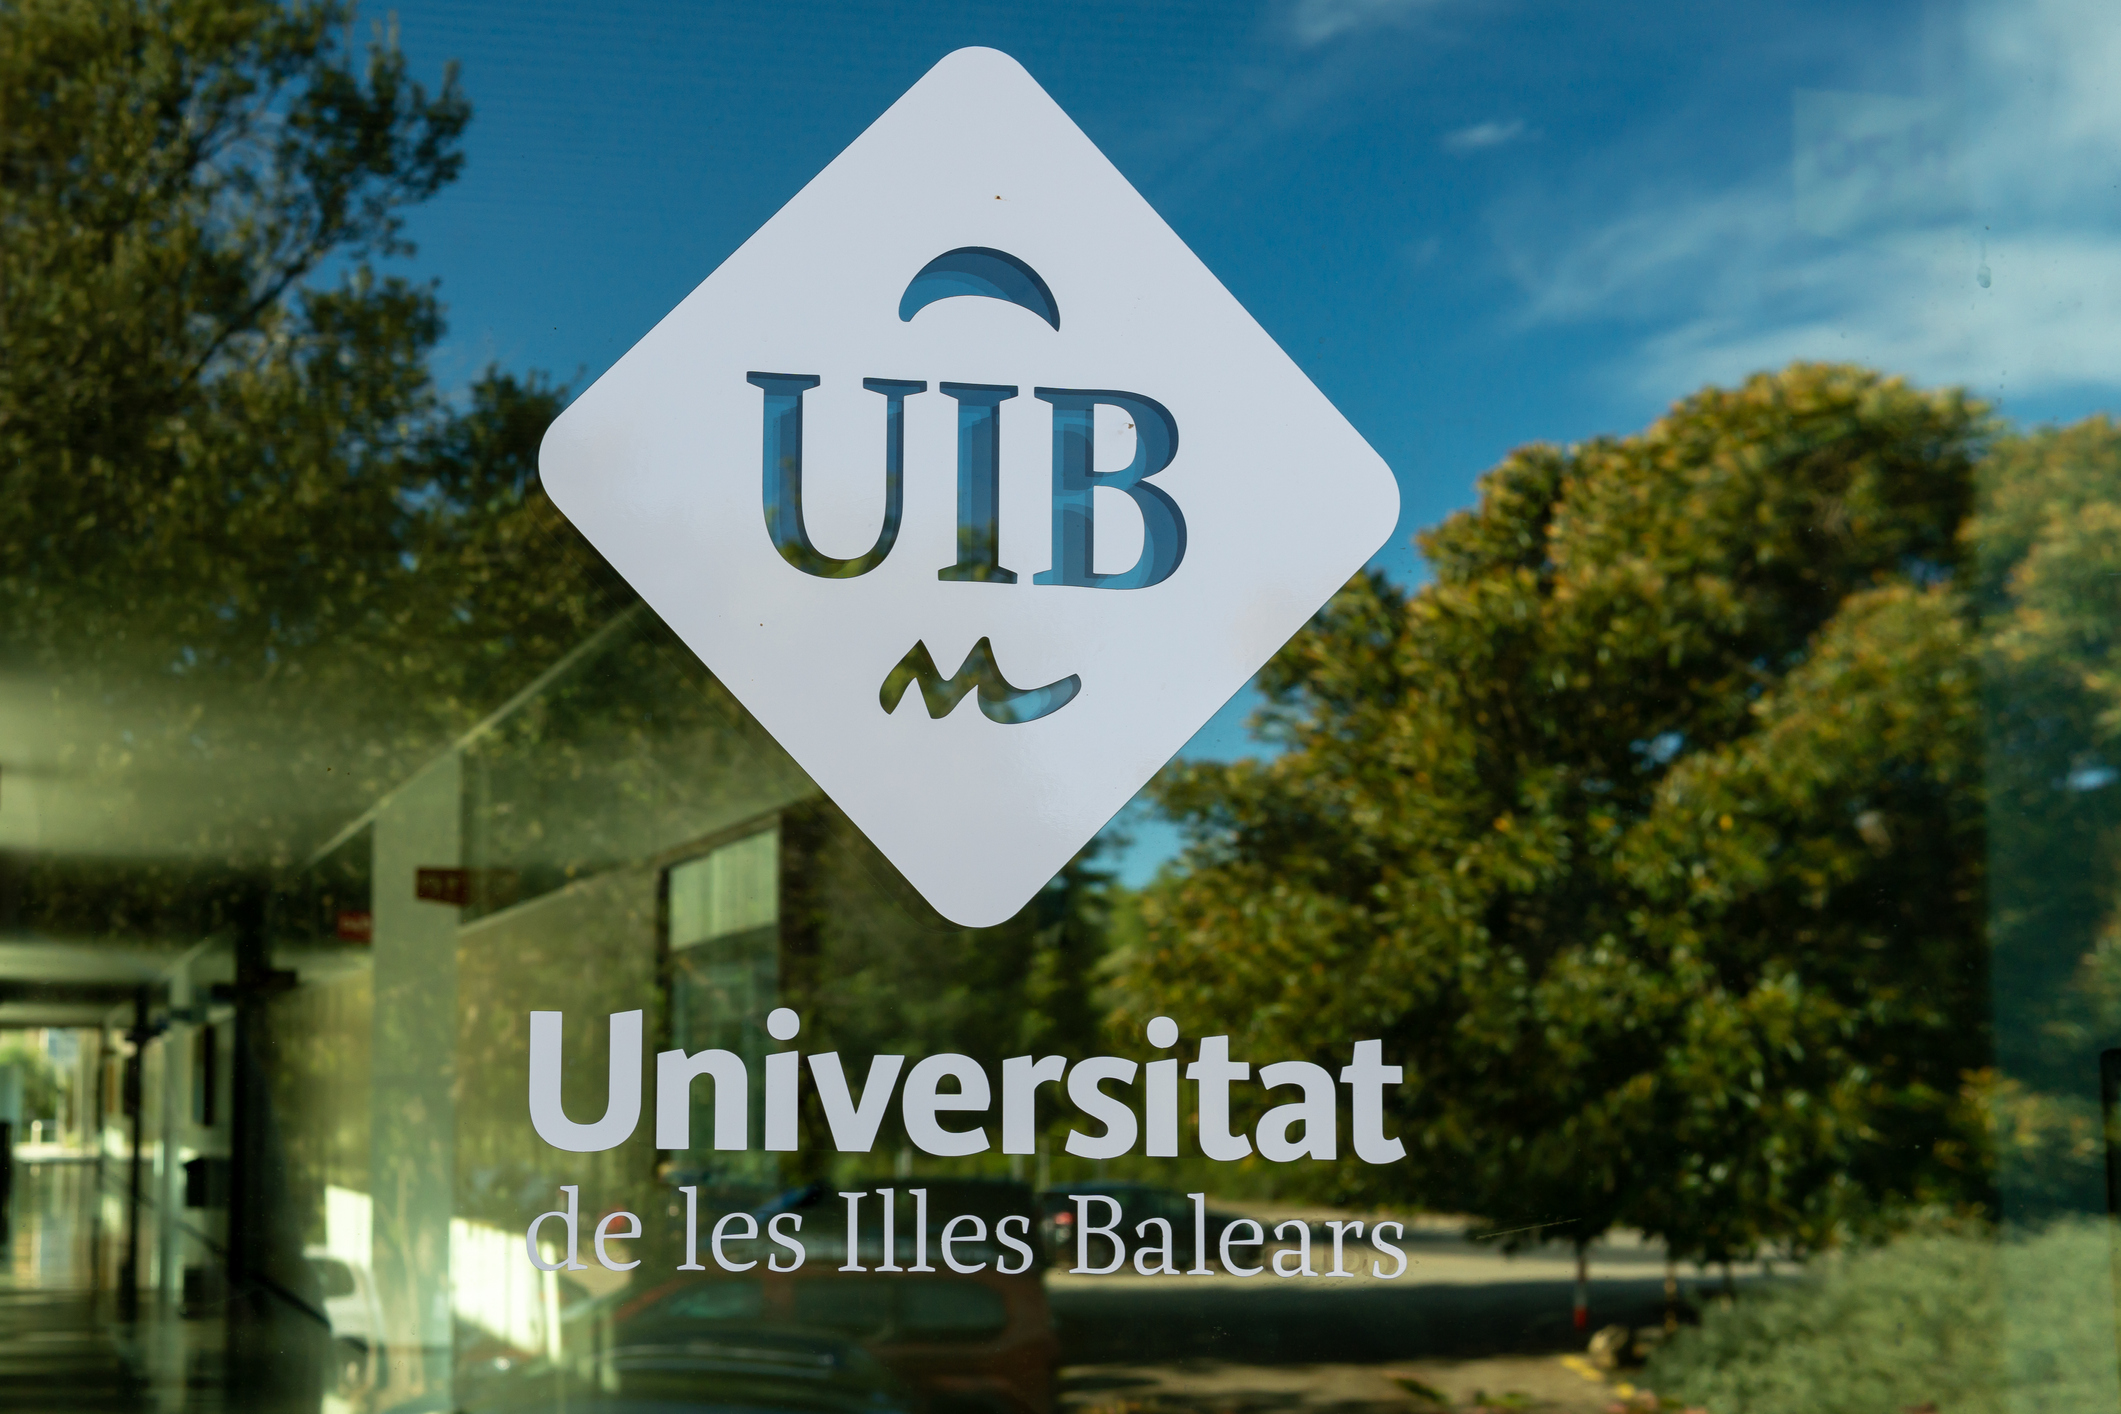 Impressió del logotip de la Universitat de les Illes Balears al vidre d'un edifici del campus